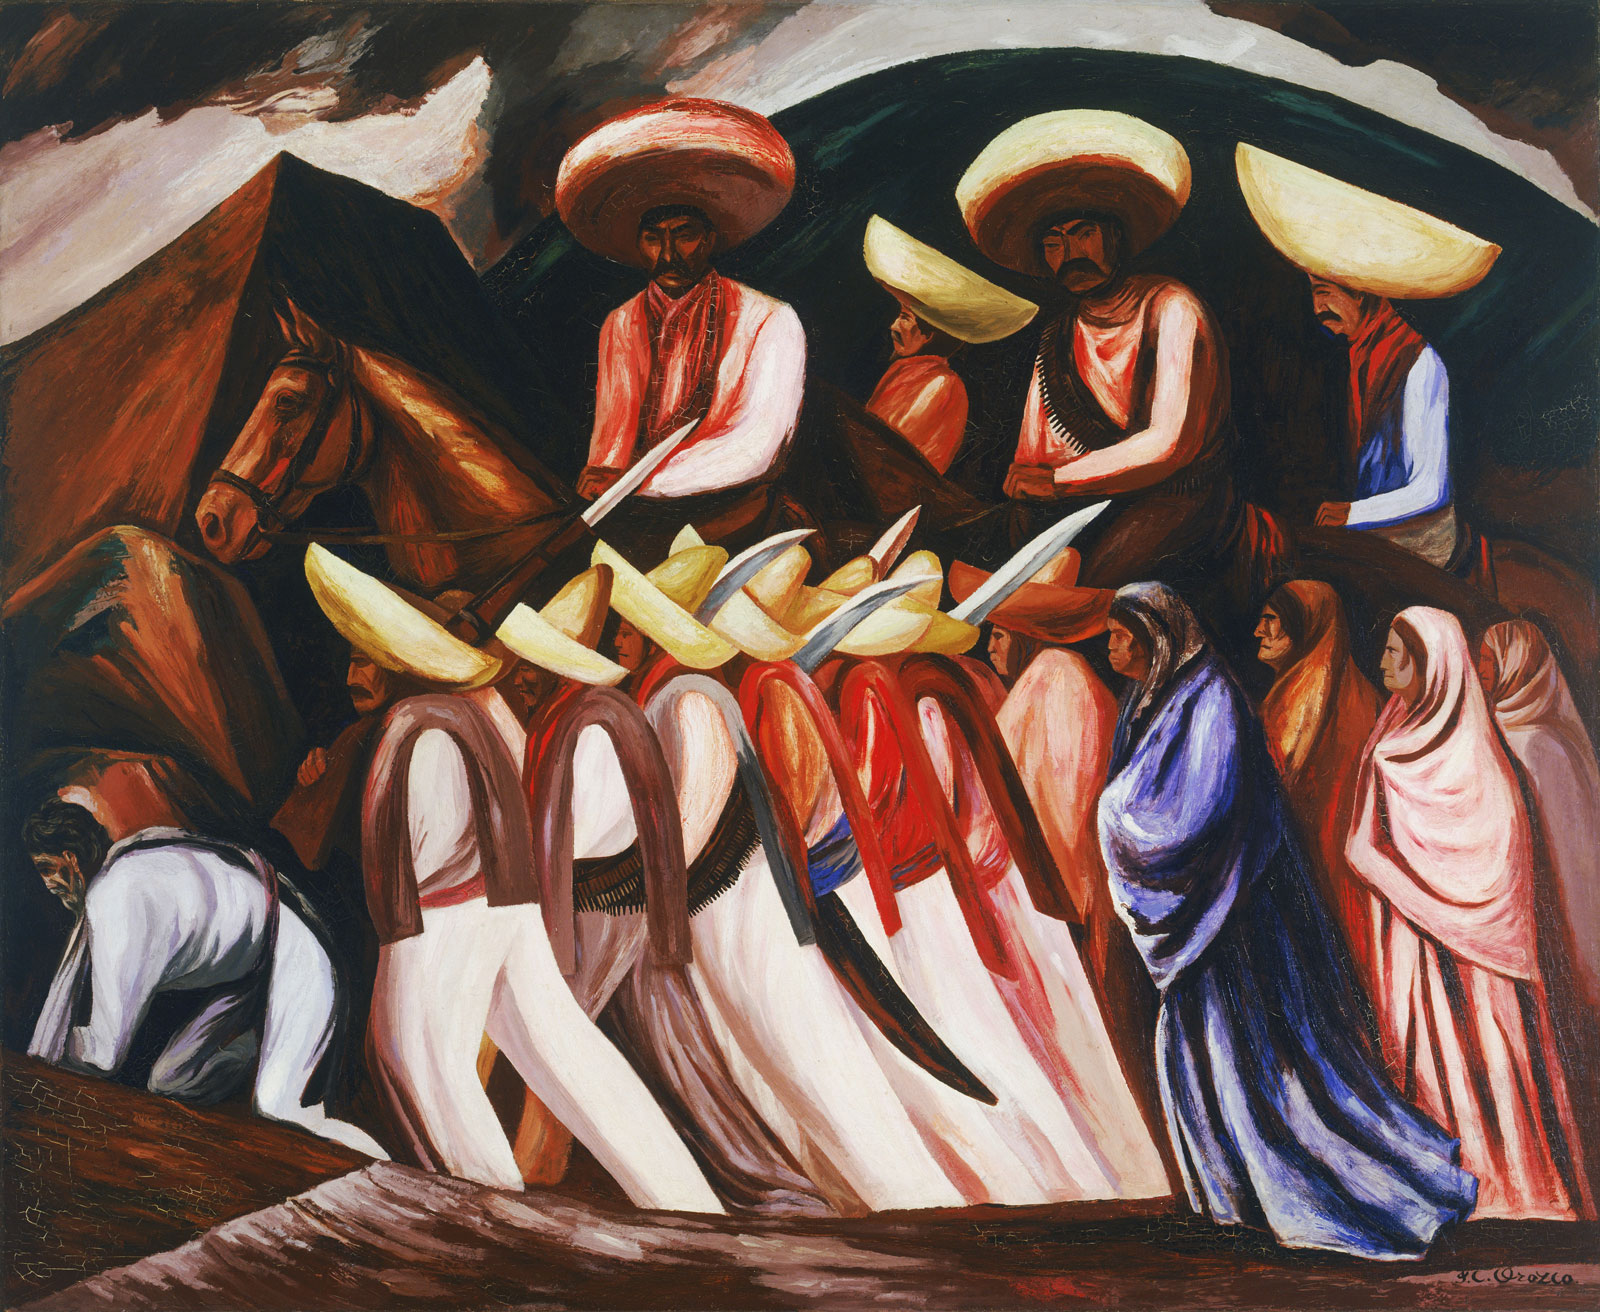 José Clemente Orozco: Zapatistas, 1931